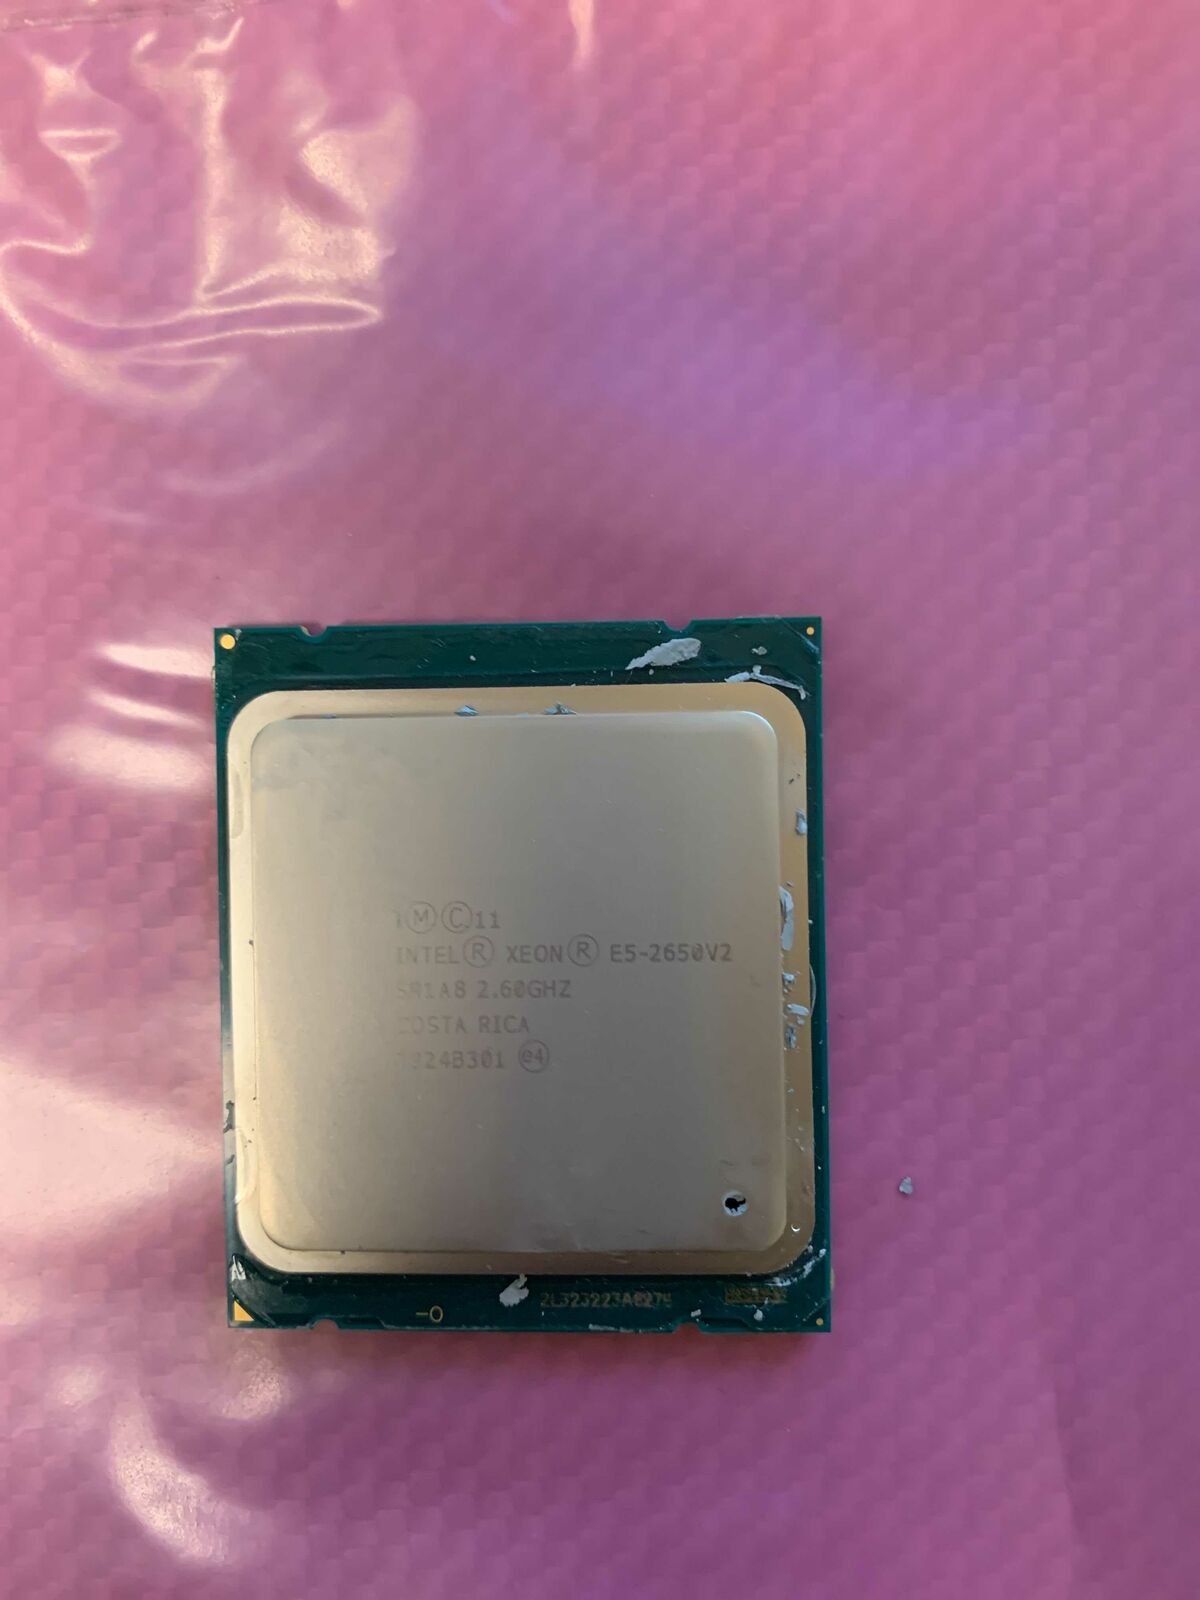 Intel Xeon E5-2650v2 Octa-Core 2.60GHz SR1A8 20MB LGA 2011 CPU Processor